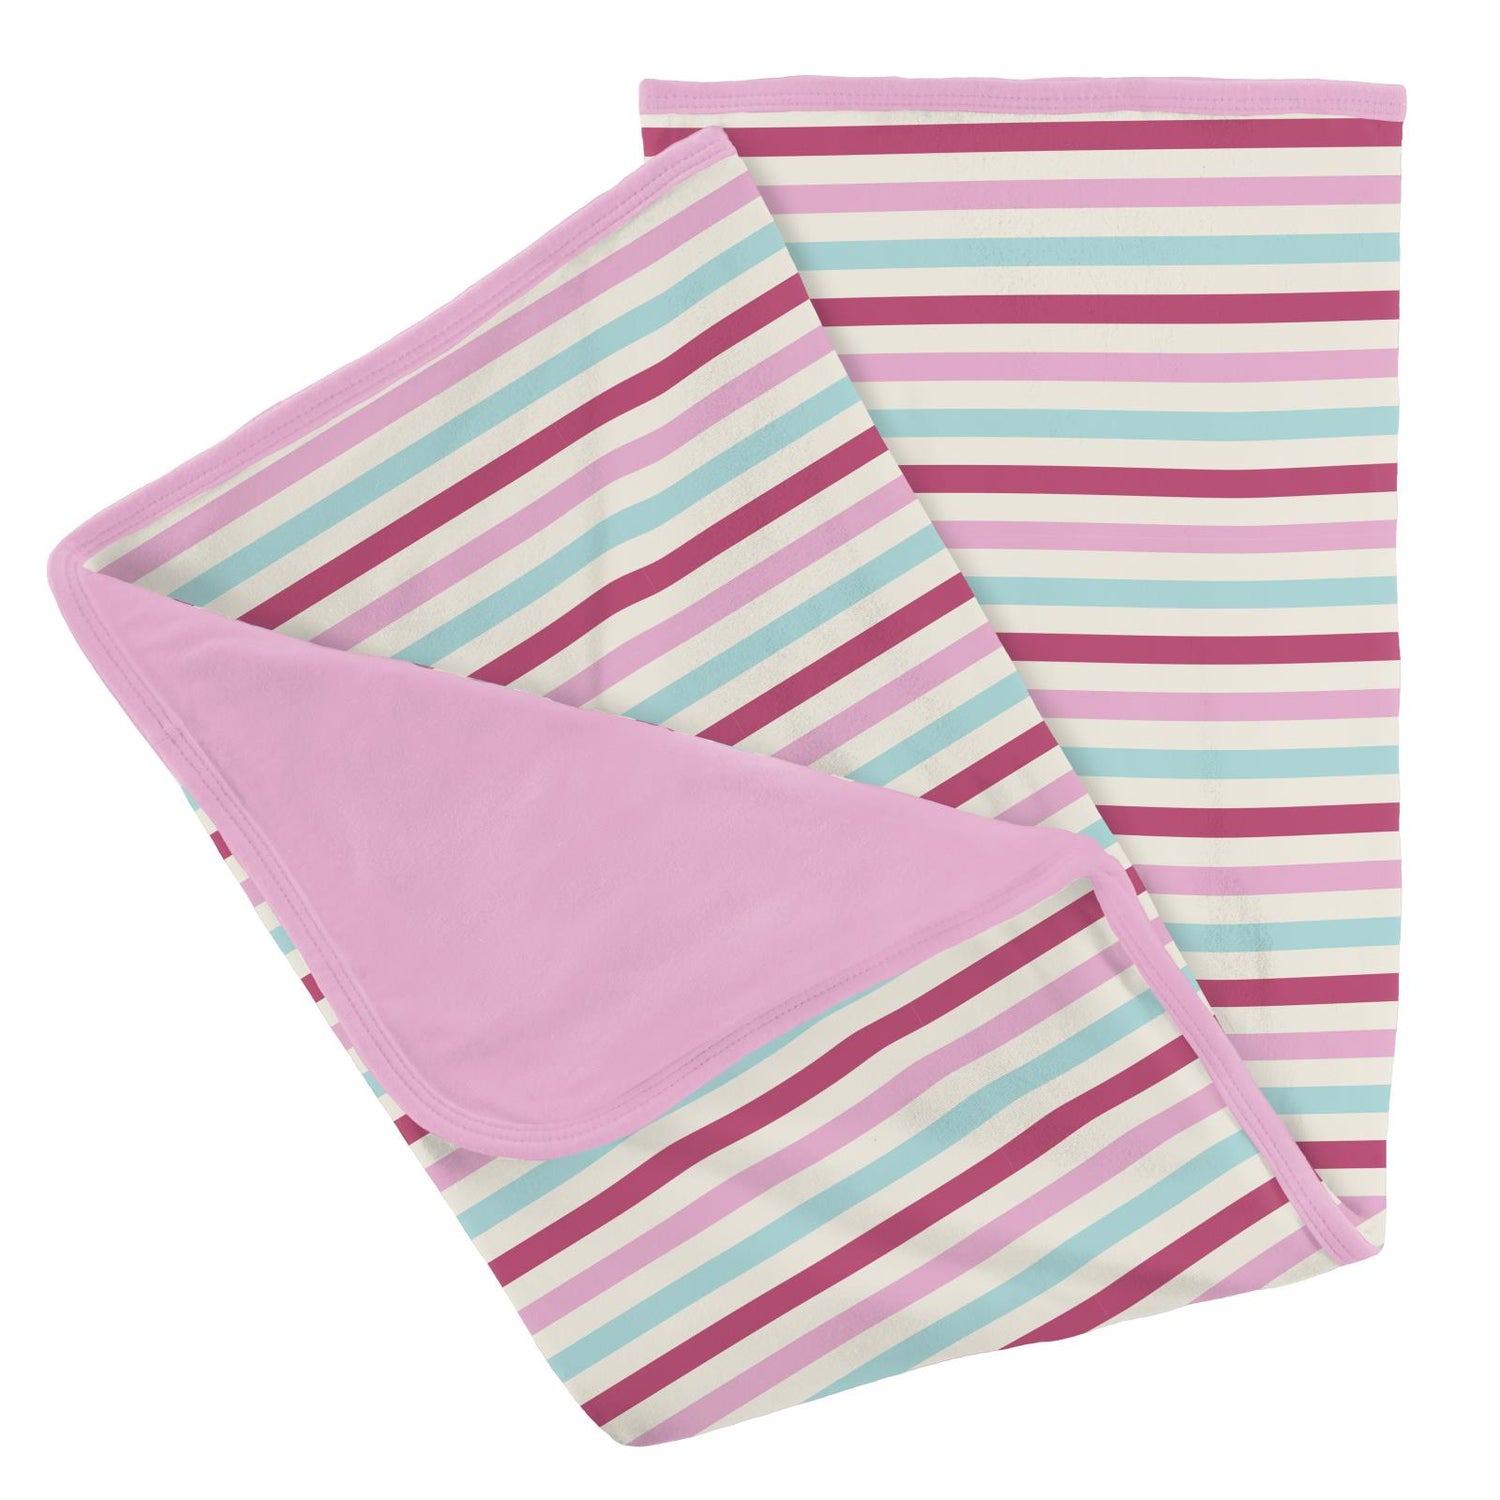 Print Stroller Blanket in Sock Hop Stripe